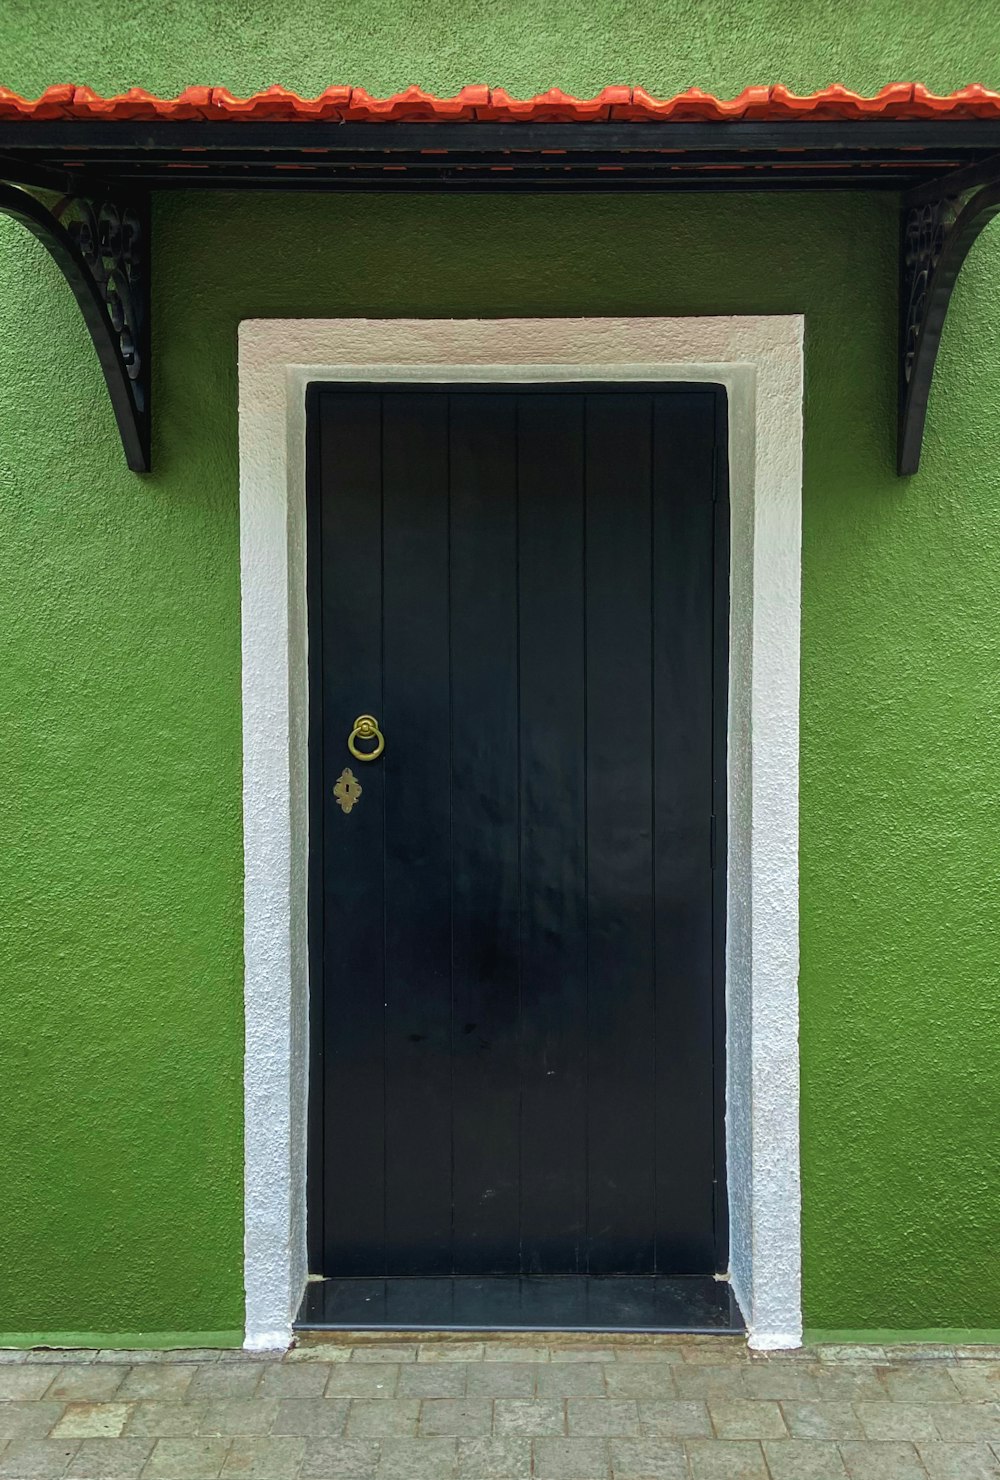 Un edificio verde con una puerta negra y adornos blancos